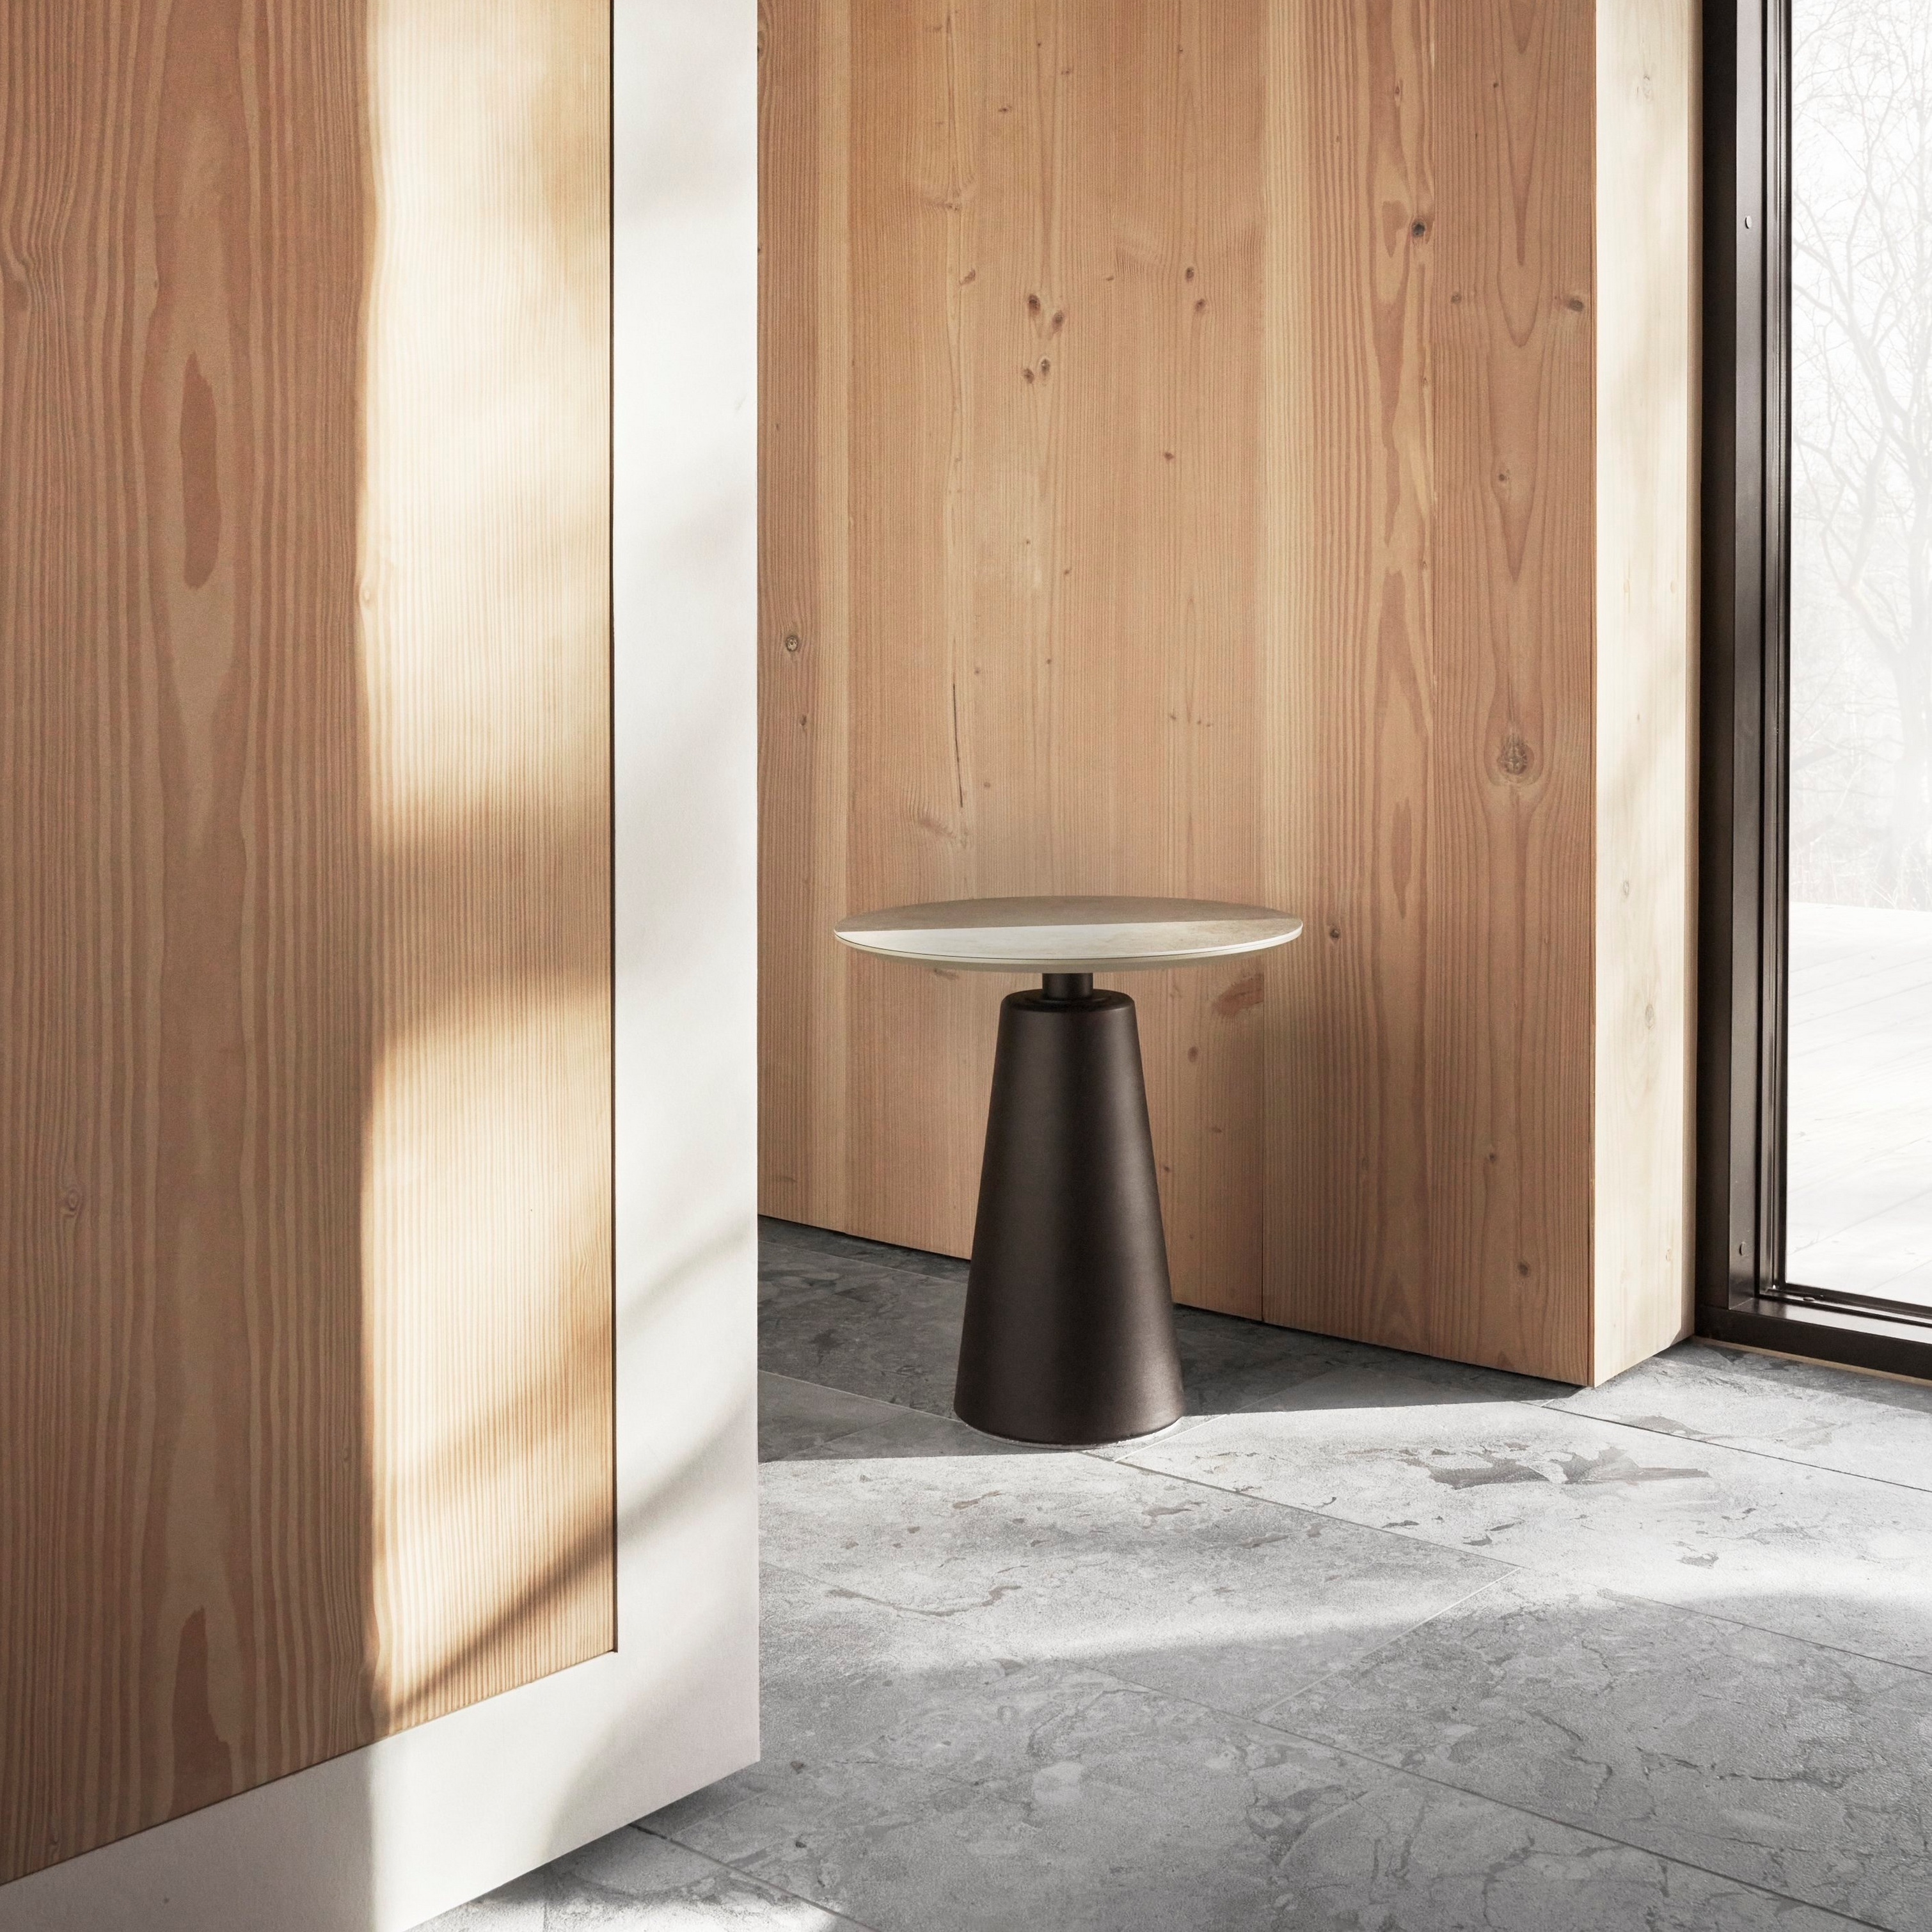 Minimalistický prostor s dřevěnými stěnami, jednoduchým odkládacím stolkem a přirozeným světlem prostupujícím velkými okny.